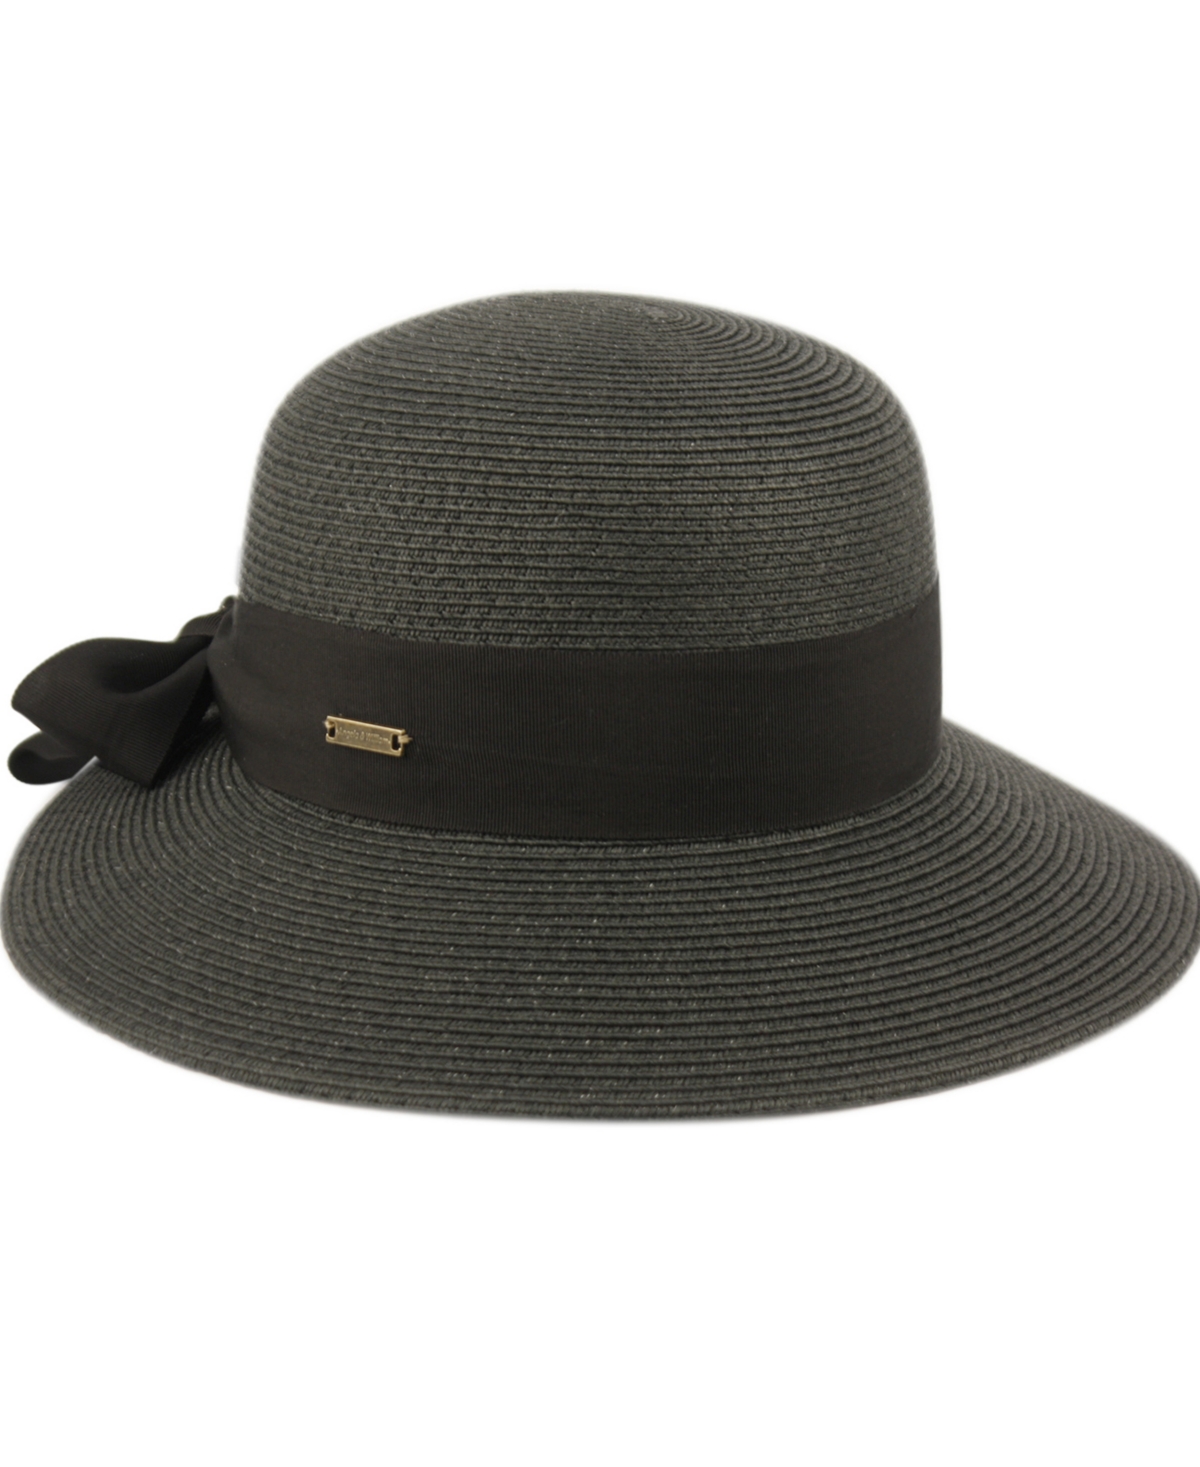 Angela & William Women's Brimmed Beach Sun Straw Hat In Gray